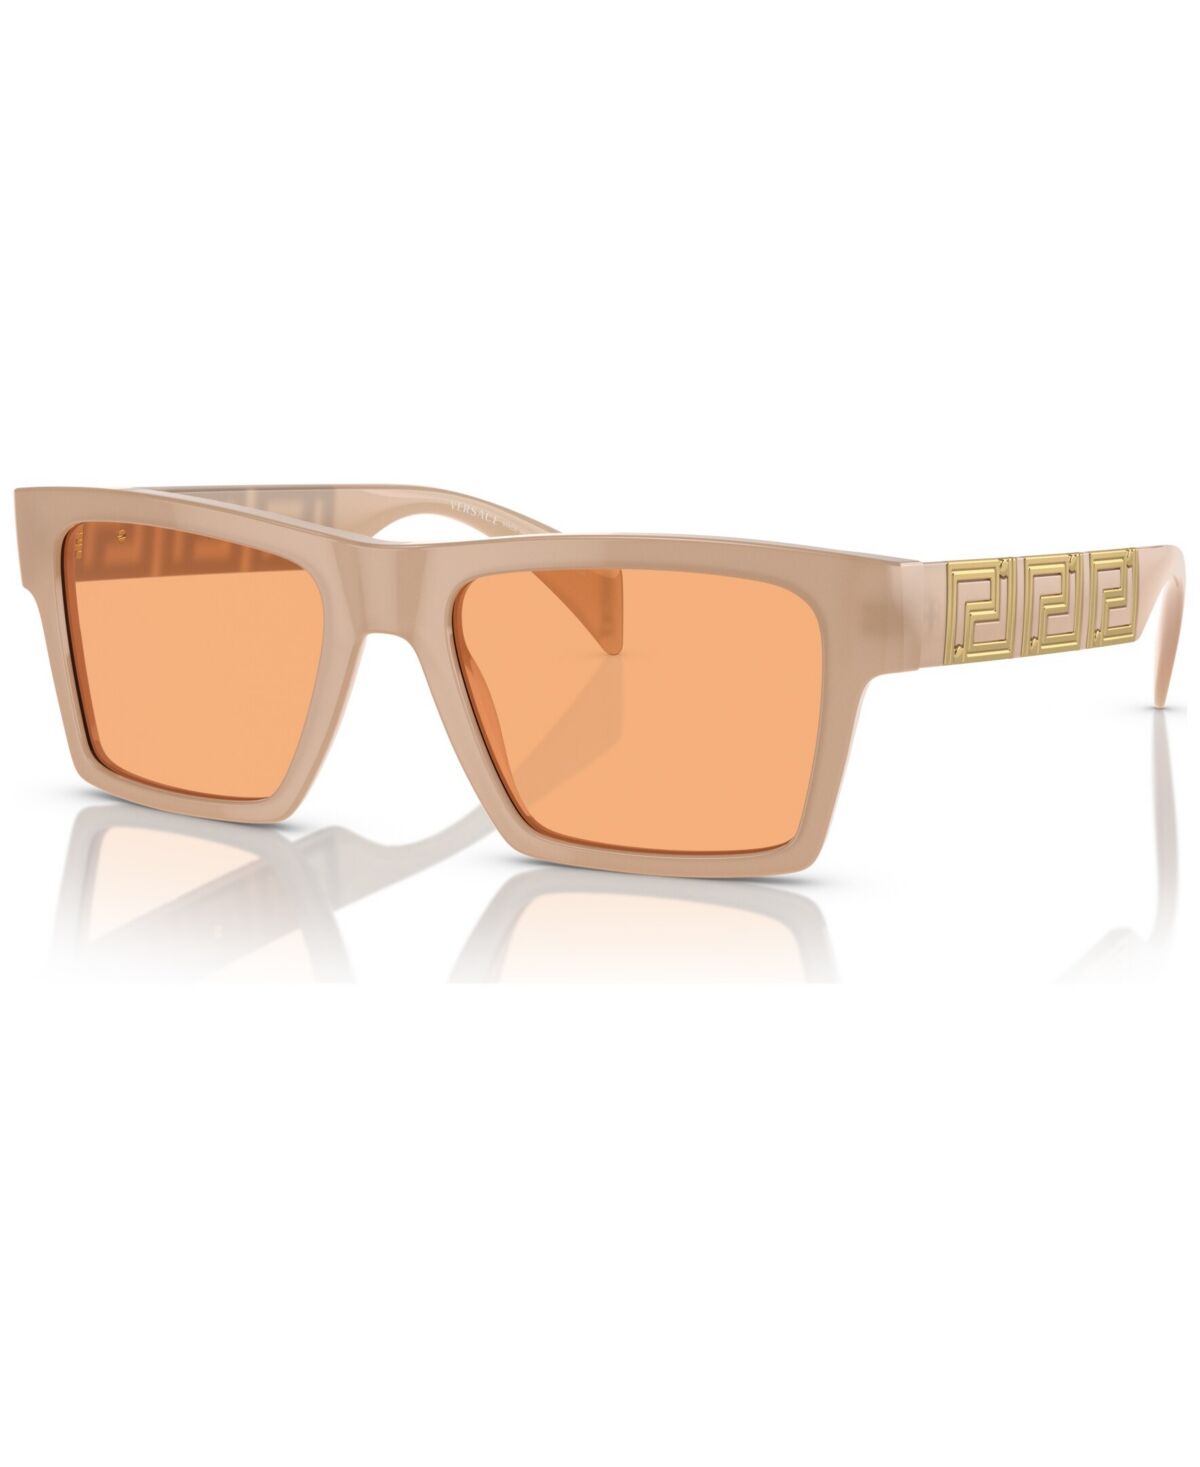 Versace Men's Sunglasses, VE4445 - Opal Beige